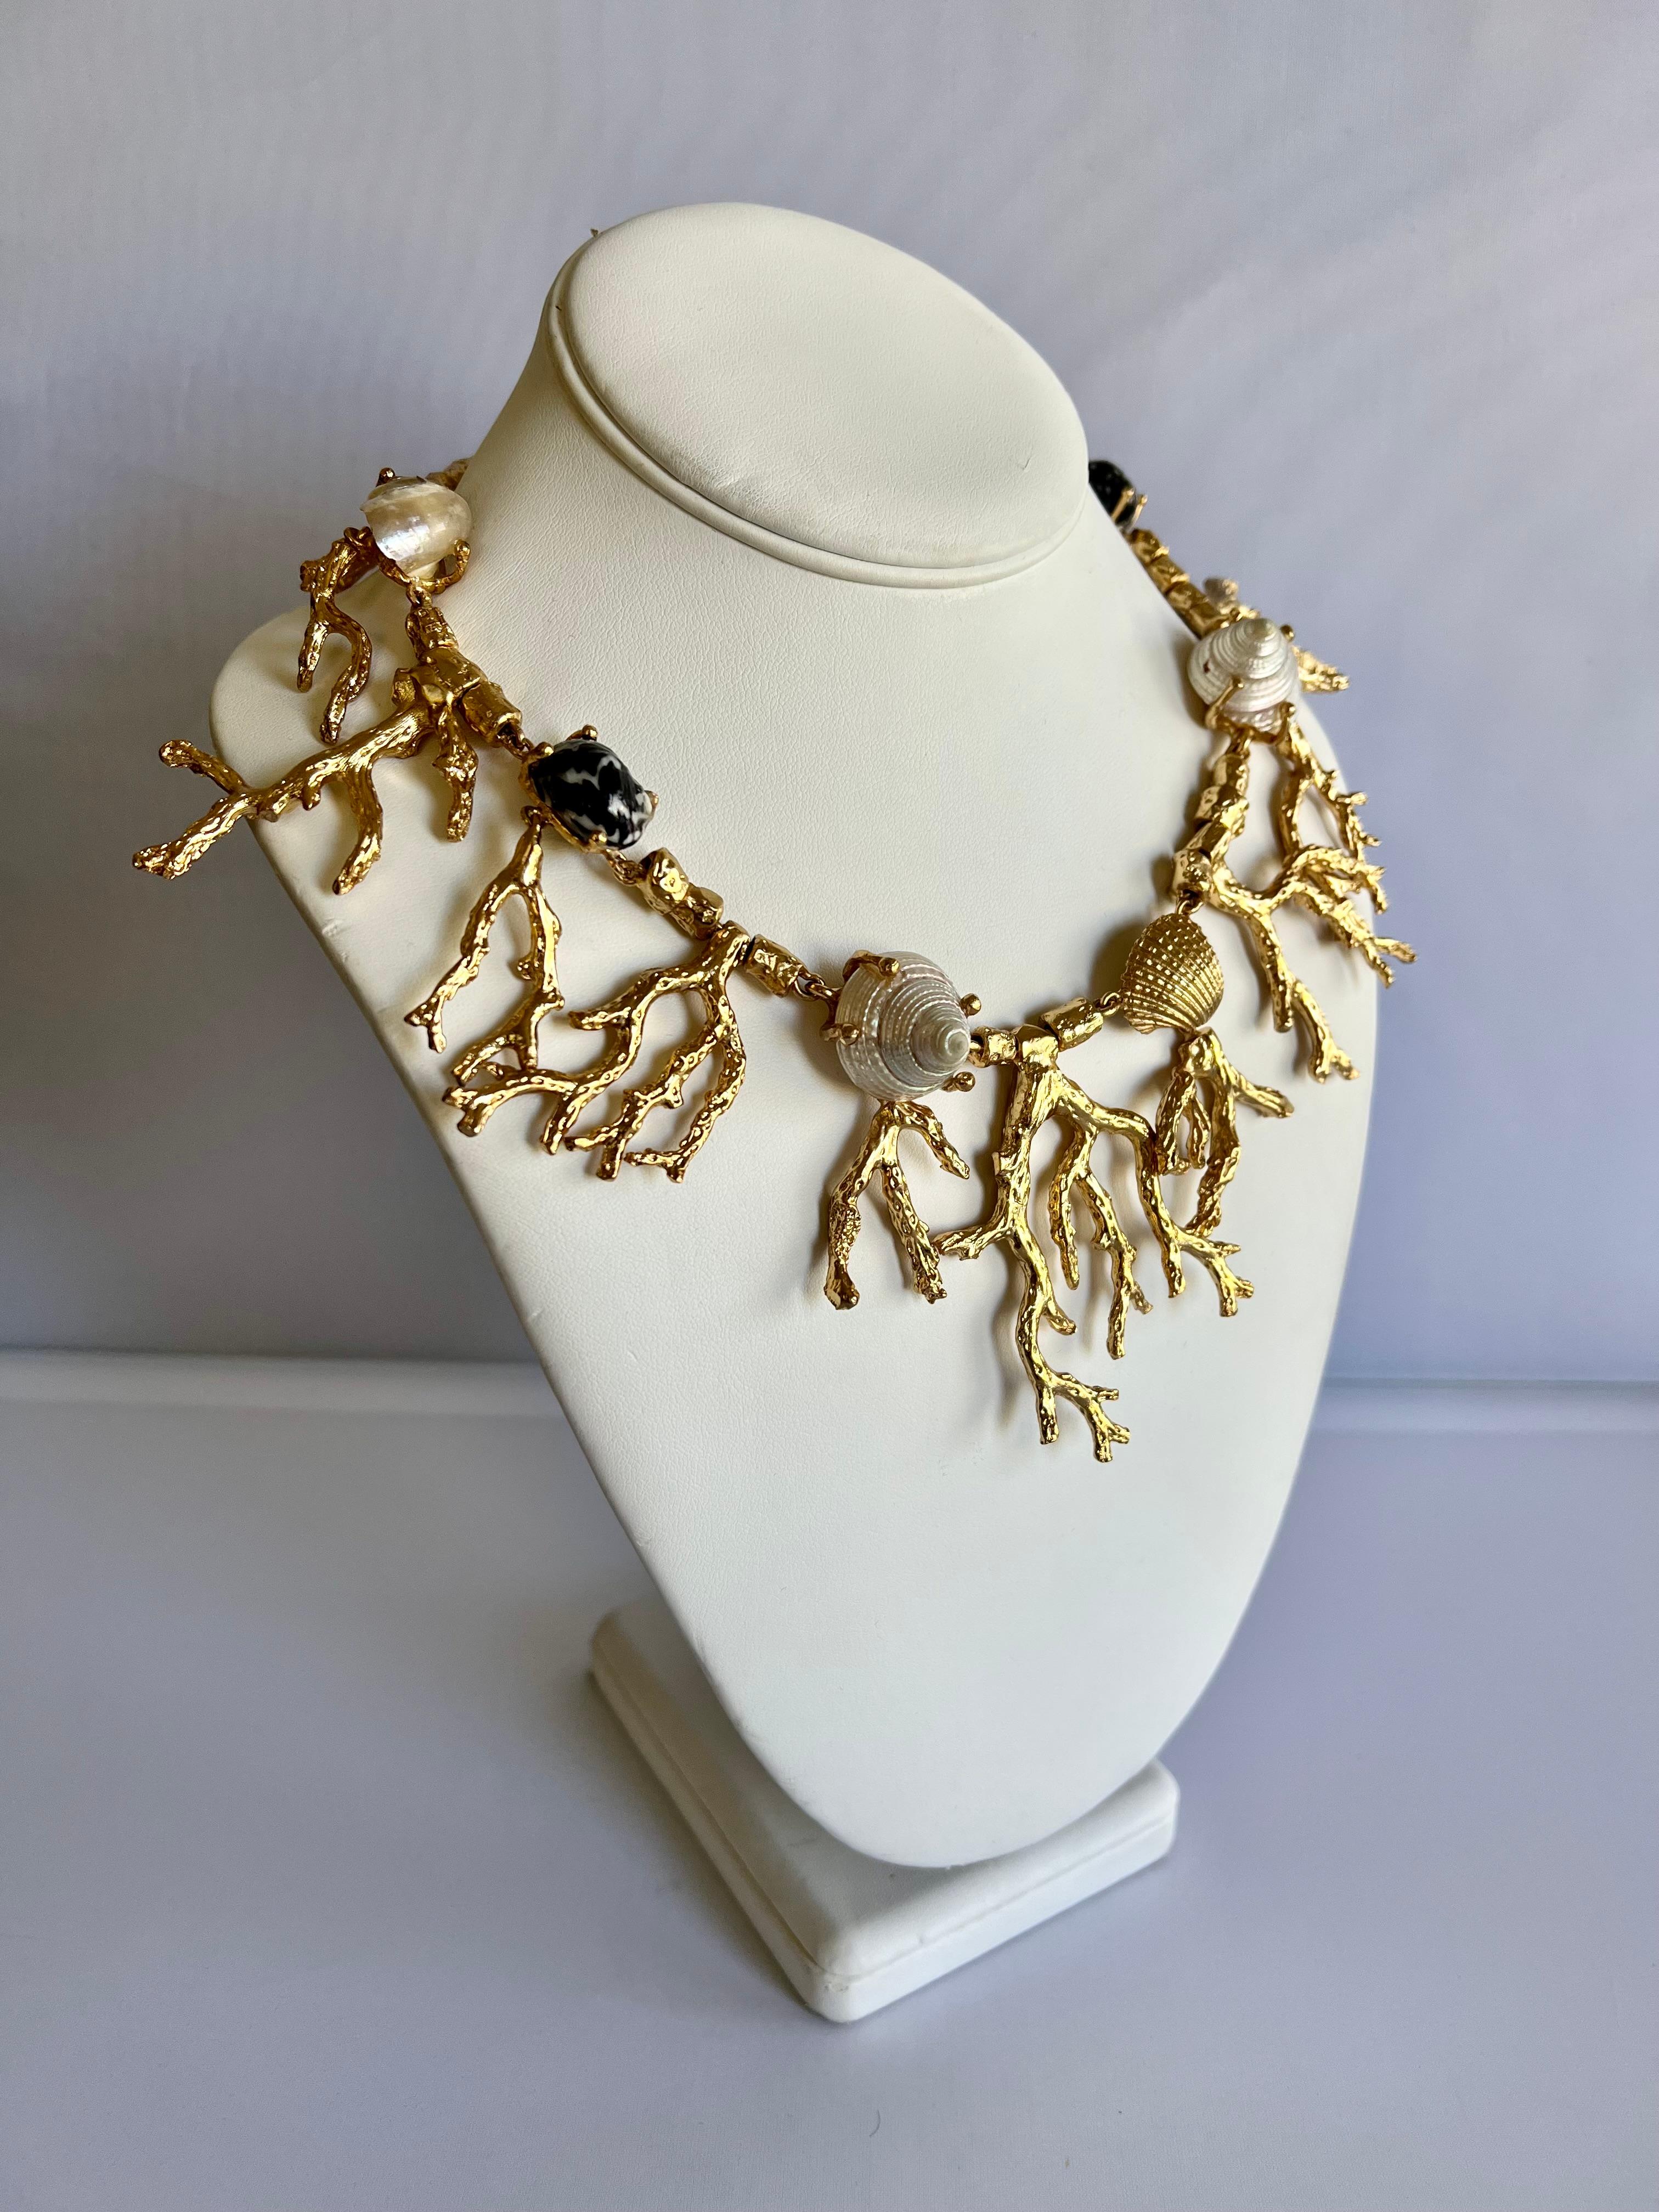 Halskette aus vergoldetem Metall, verziert mit natürlichen Muscheln - hergestellt in Paris, Frankreich.